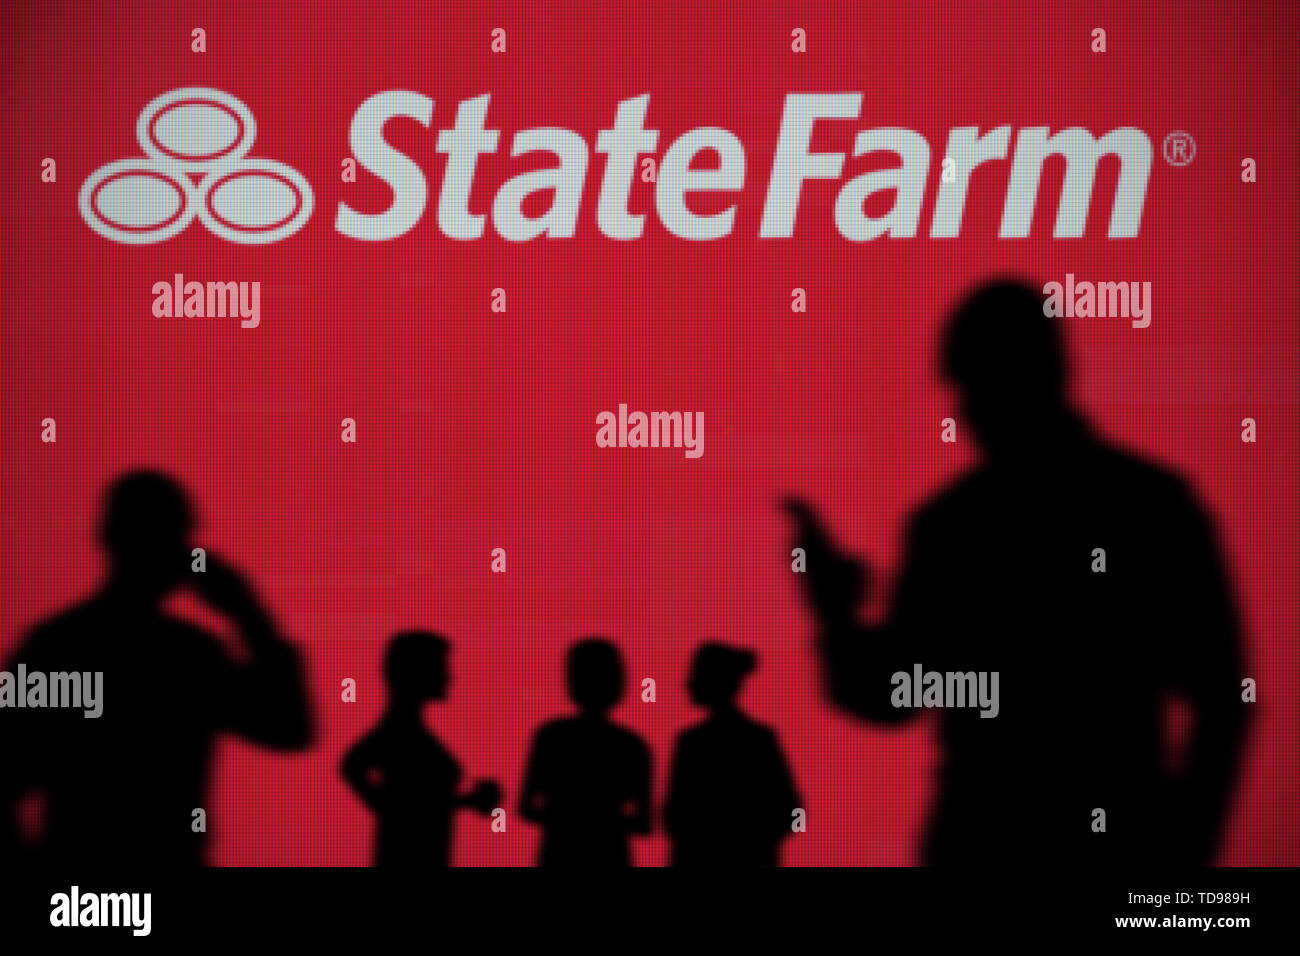 La Fattoria di stato logo è visibile su uno schermo a LED in background mentre si profila una persona utilizza uno smartphone in primo piano (solo uso editoriale) Foto Stock